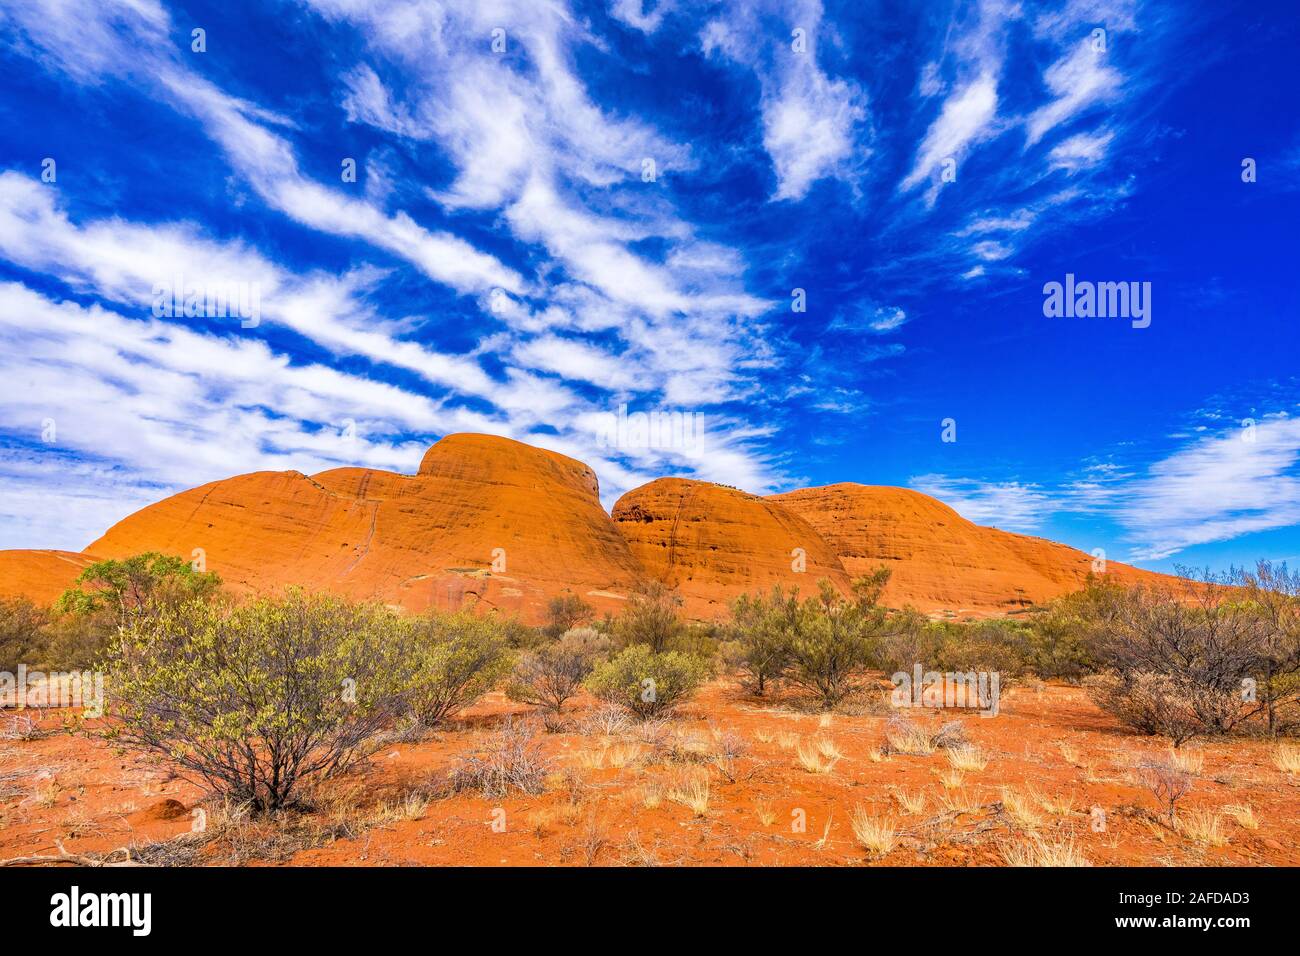 Les formations de nuages unique sur les Olgas, connu sous le nom de Kata Tjuta dans l'arrière-pays australien Banque D'Images